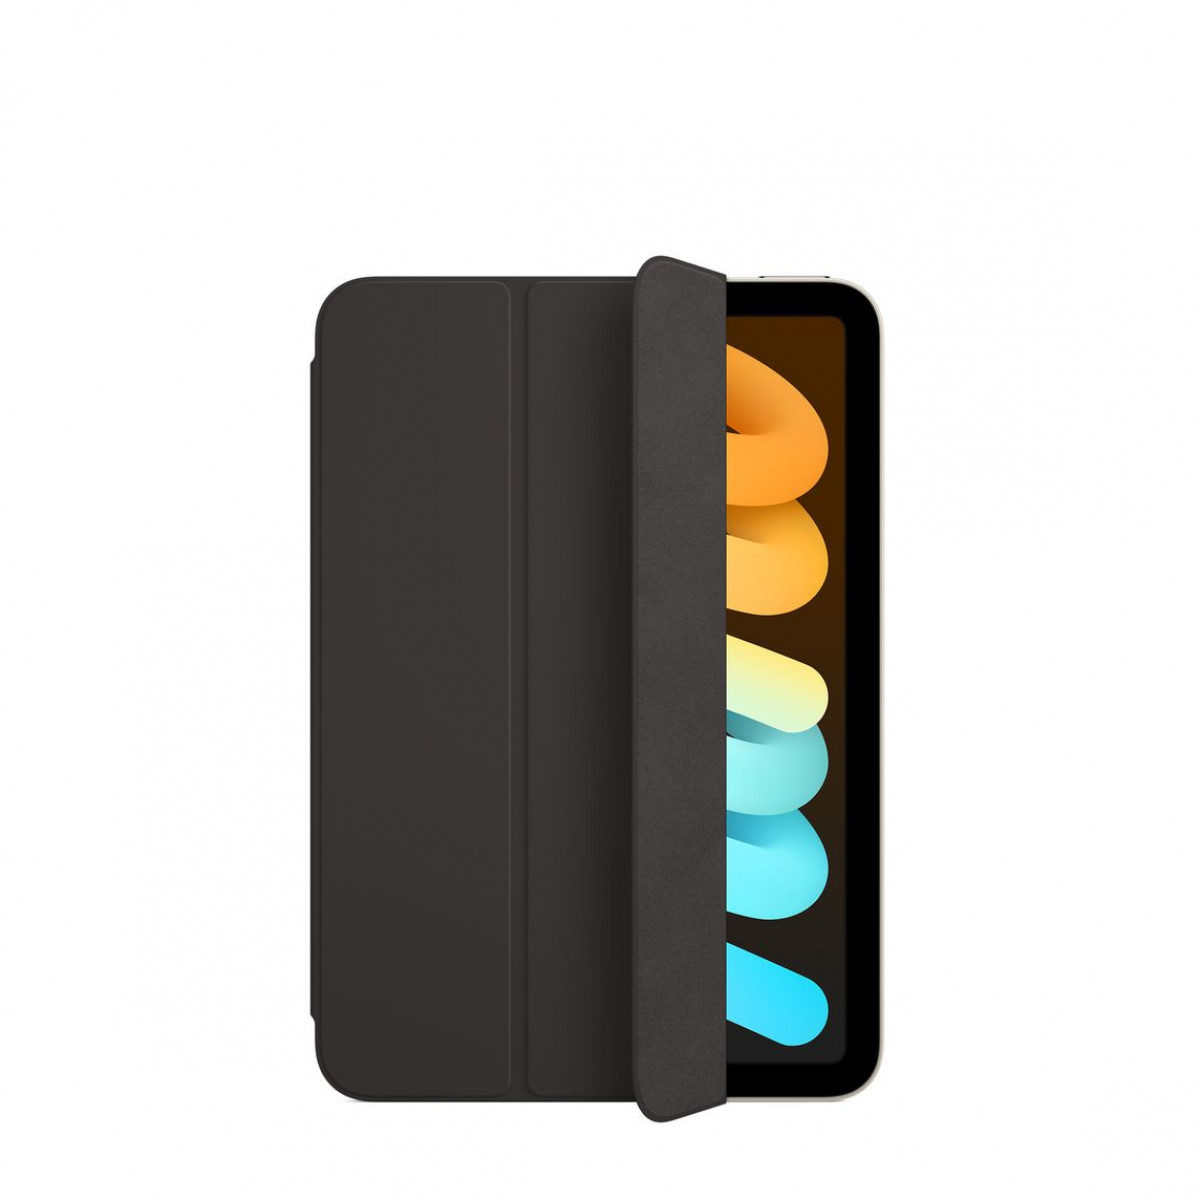 Smart Folio для iPad mini (6-поколения) - Черный